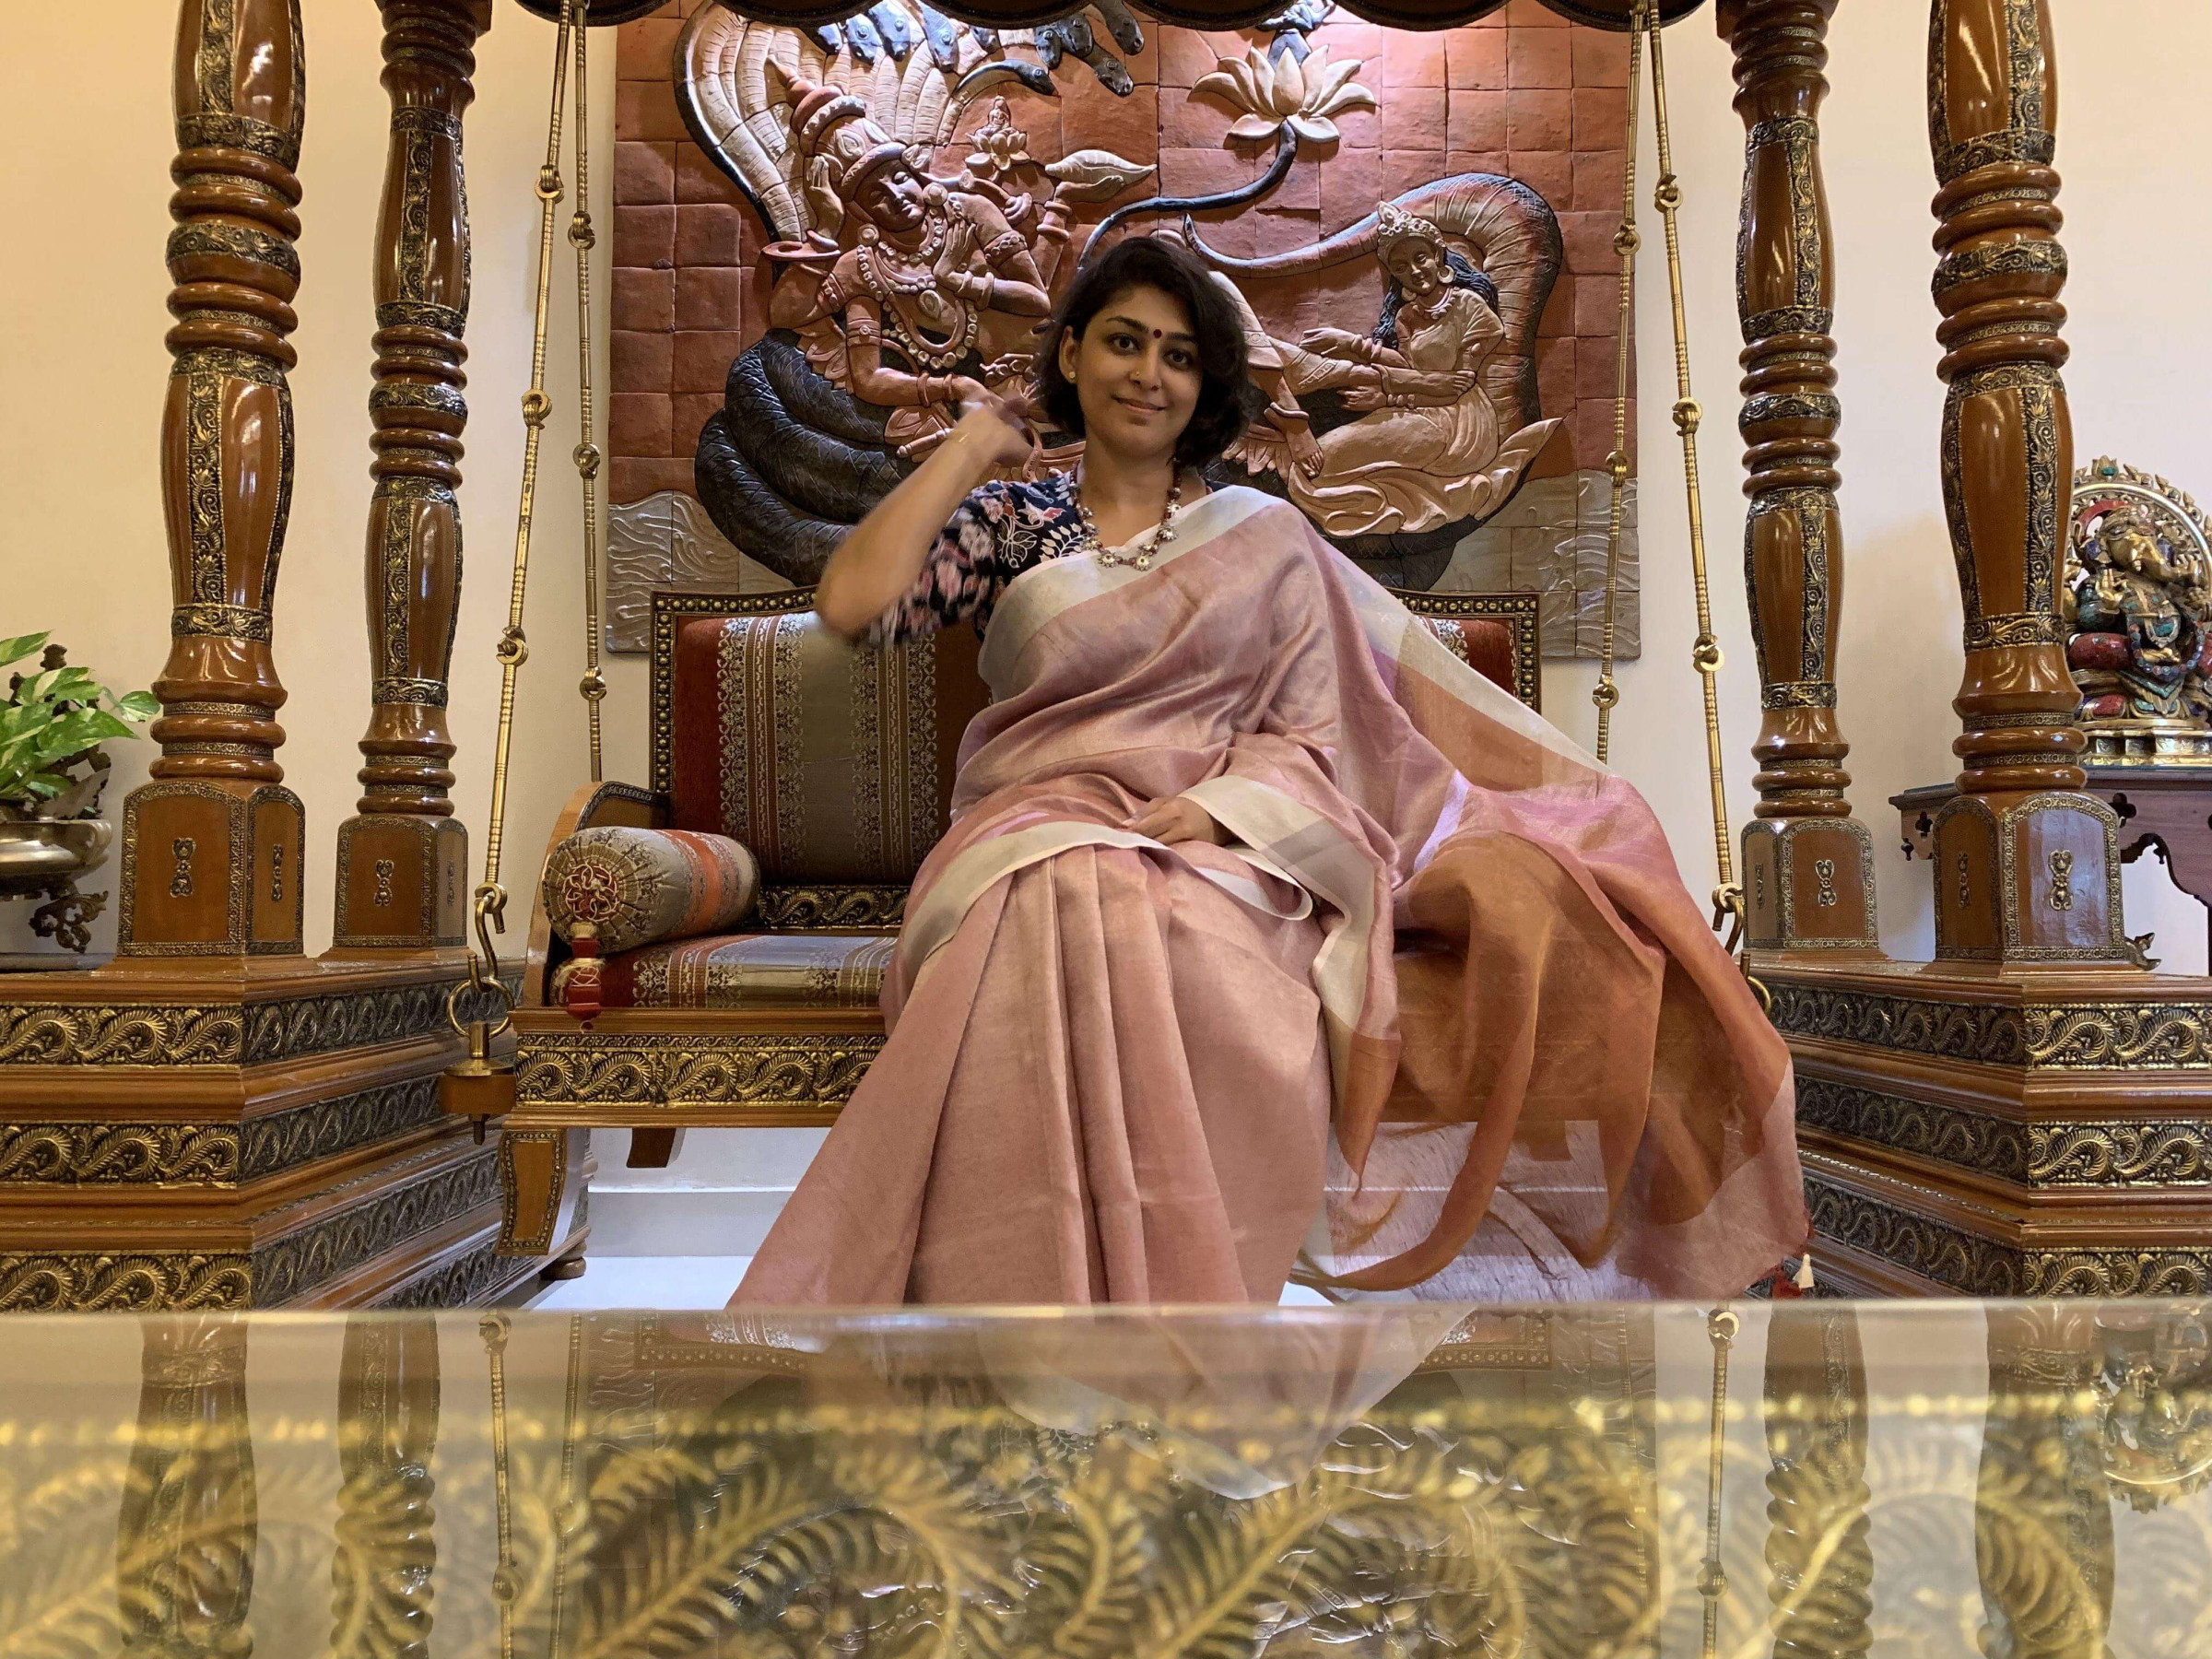 Sumitra Selvaraj on Instagram: My everyday drape is a Nivi